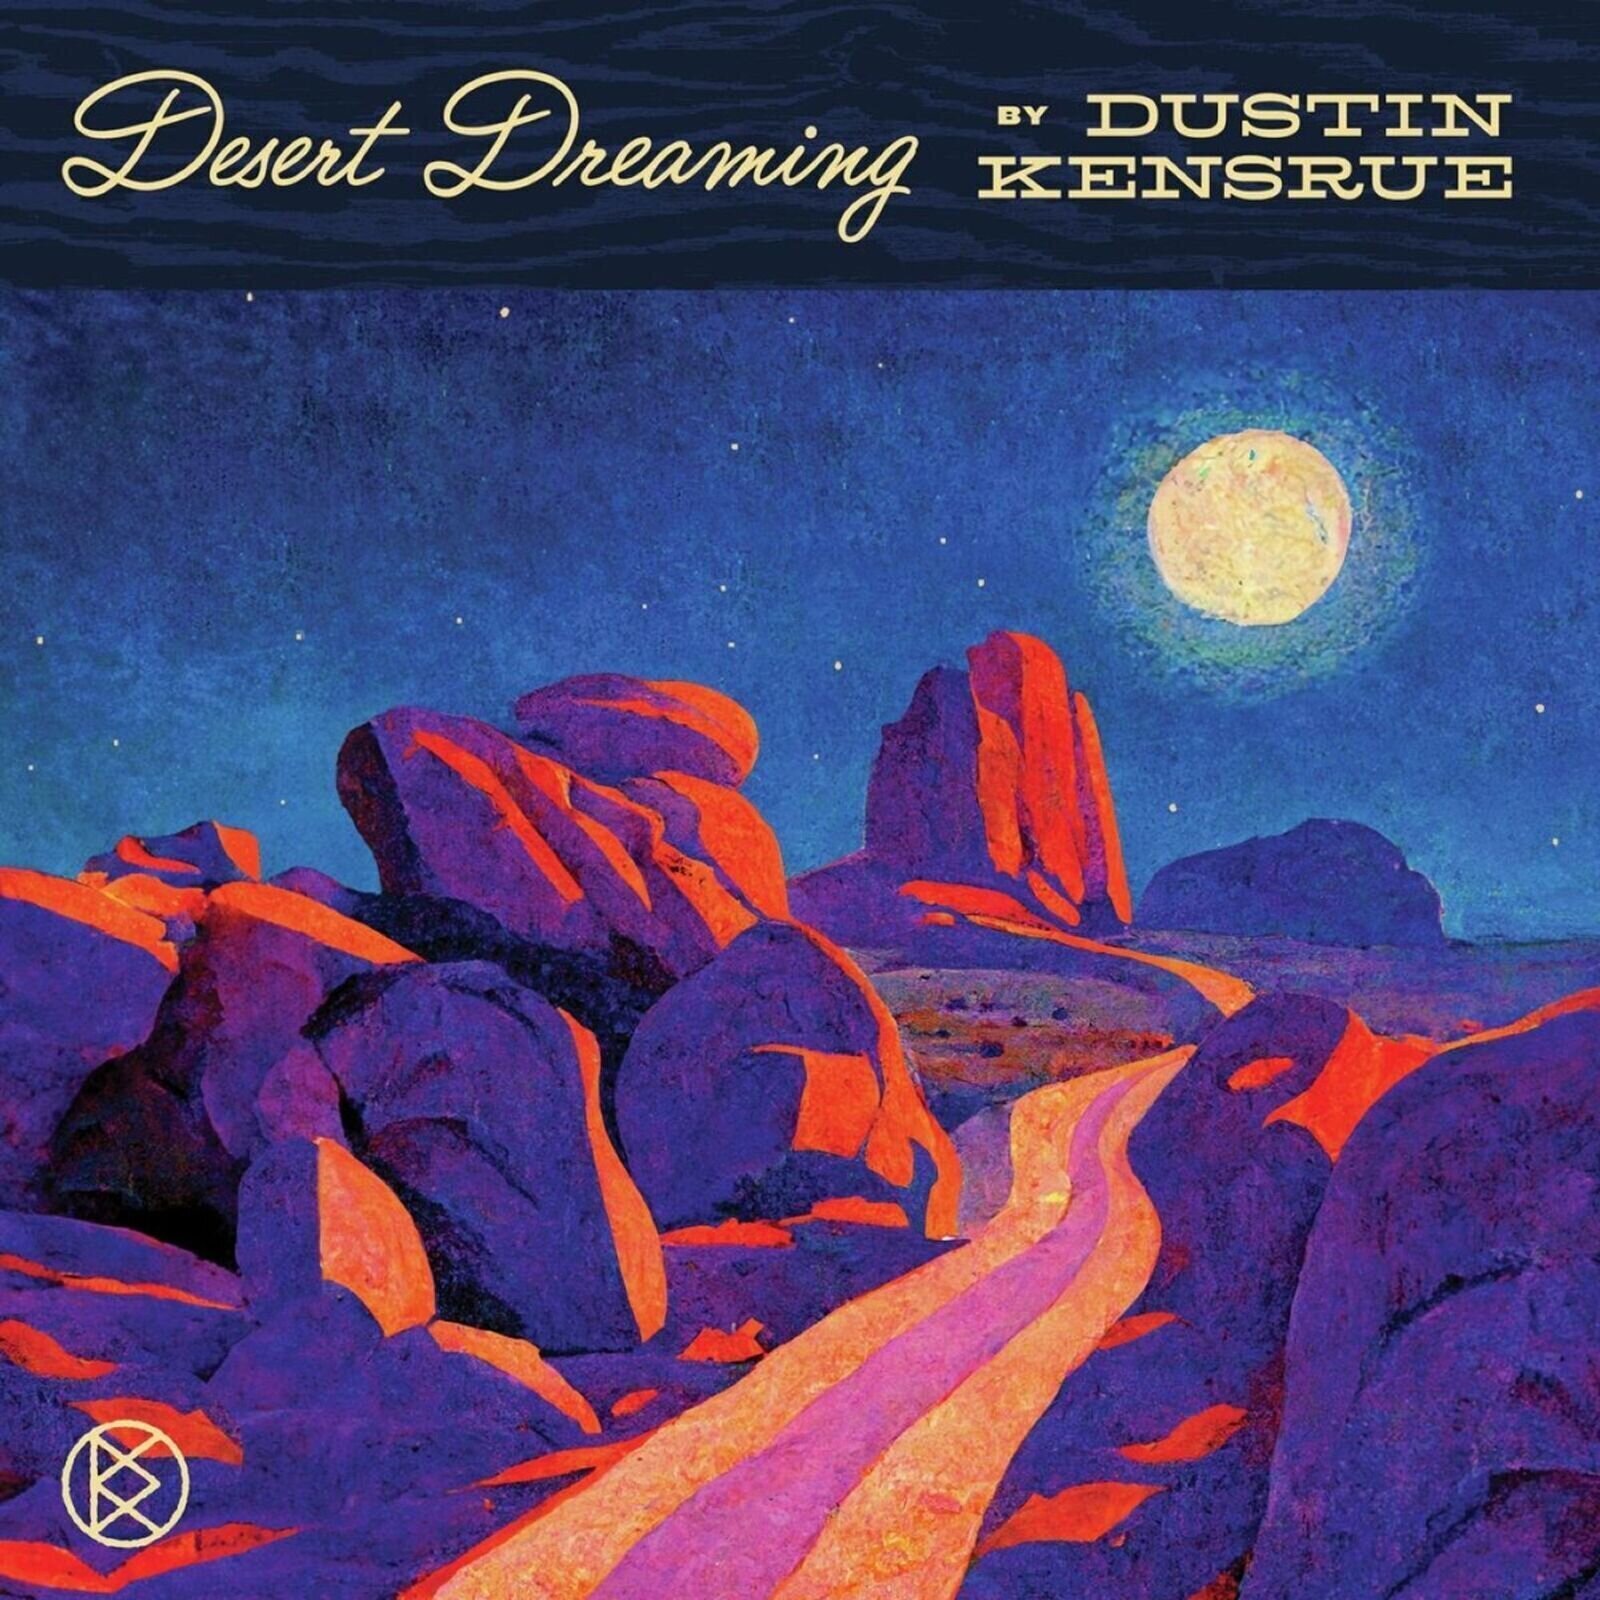 CD Μουσικής Dustin Kensrue - Desert Dreaming (CD)